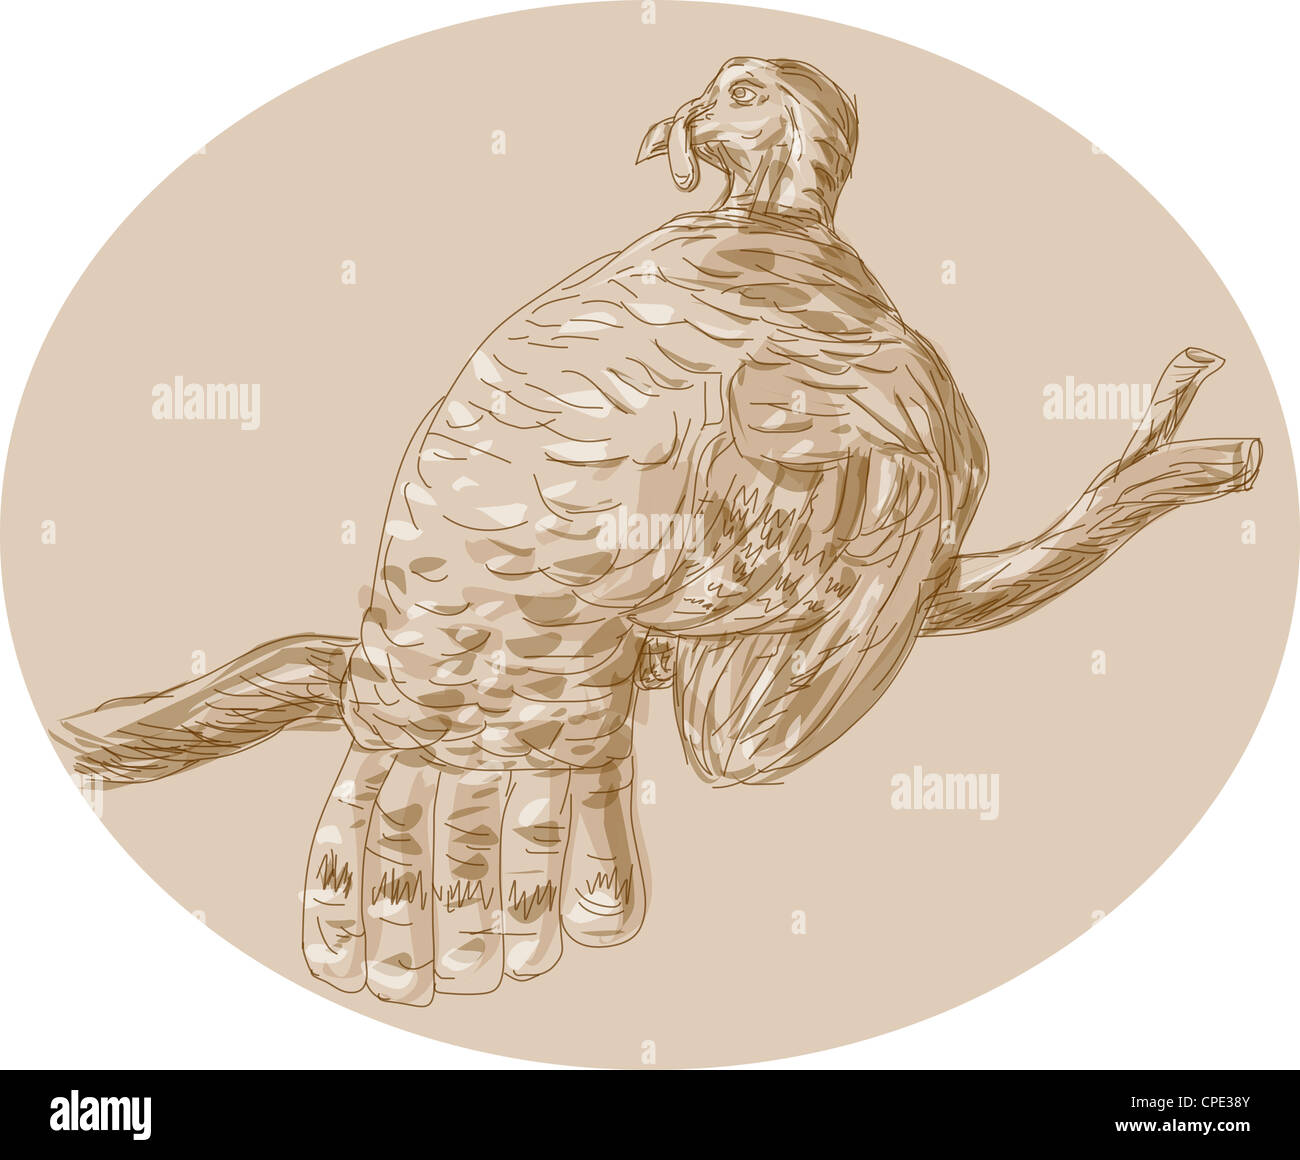 Croquis dessinés à la main, illustration d'un dindon sauvage perching on branch vu de l'arrière. Banque D'Images